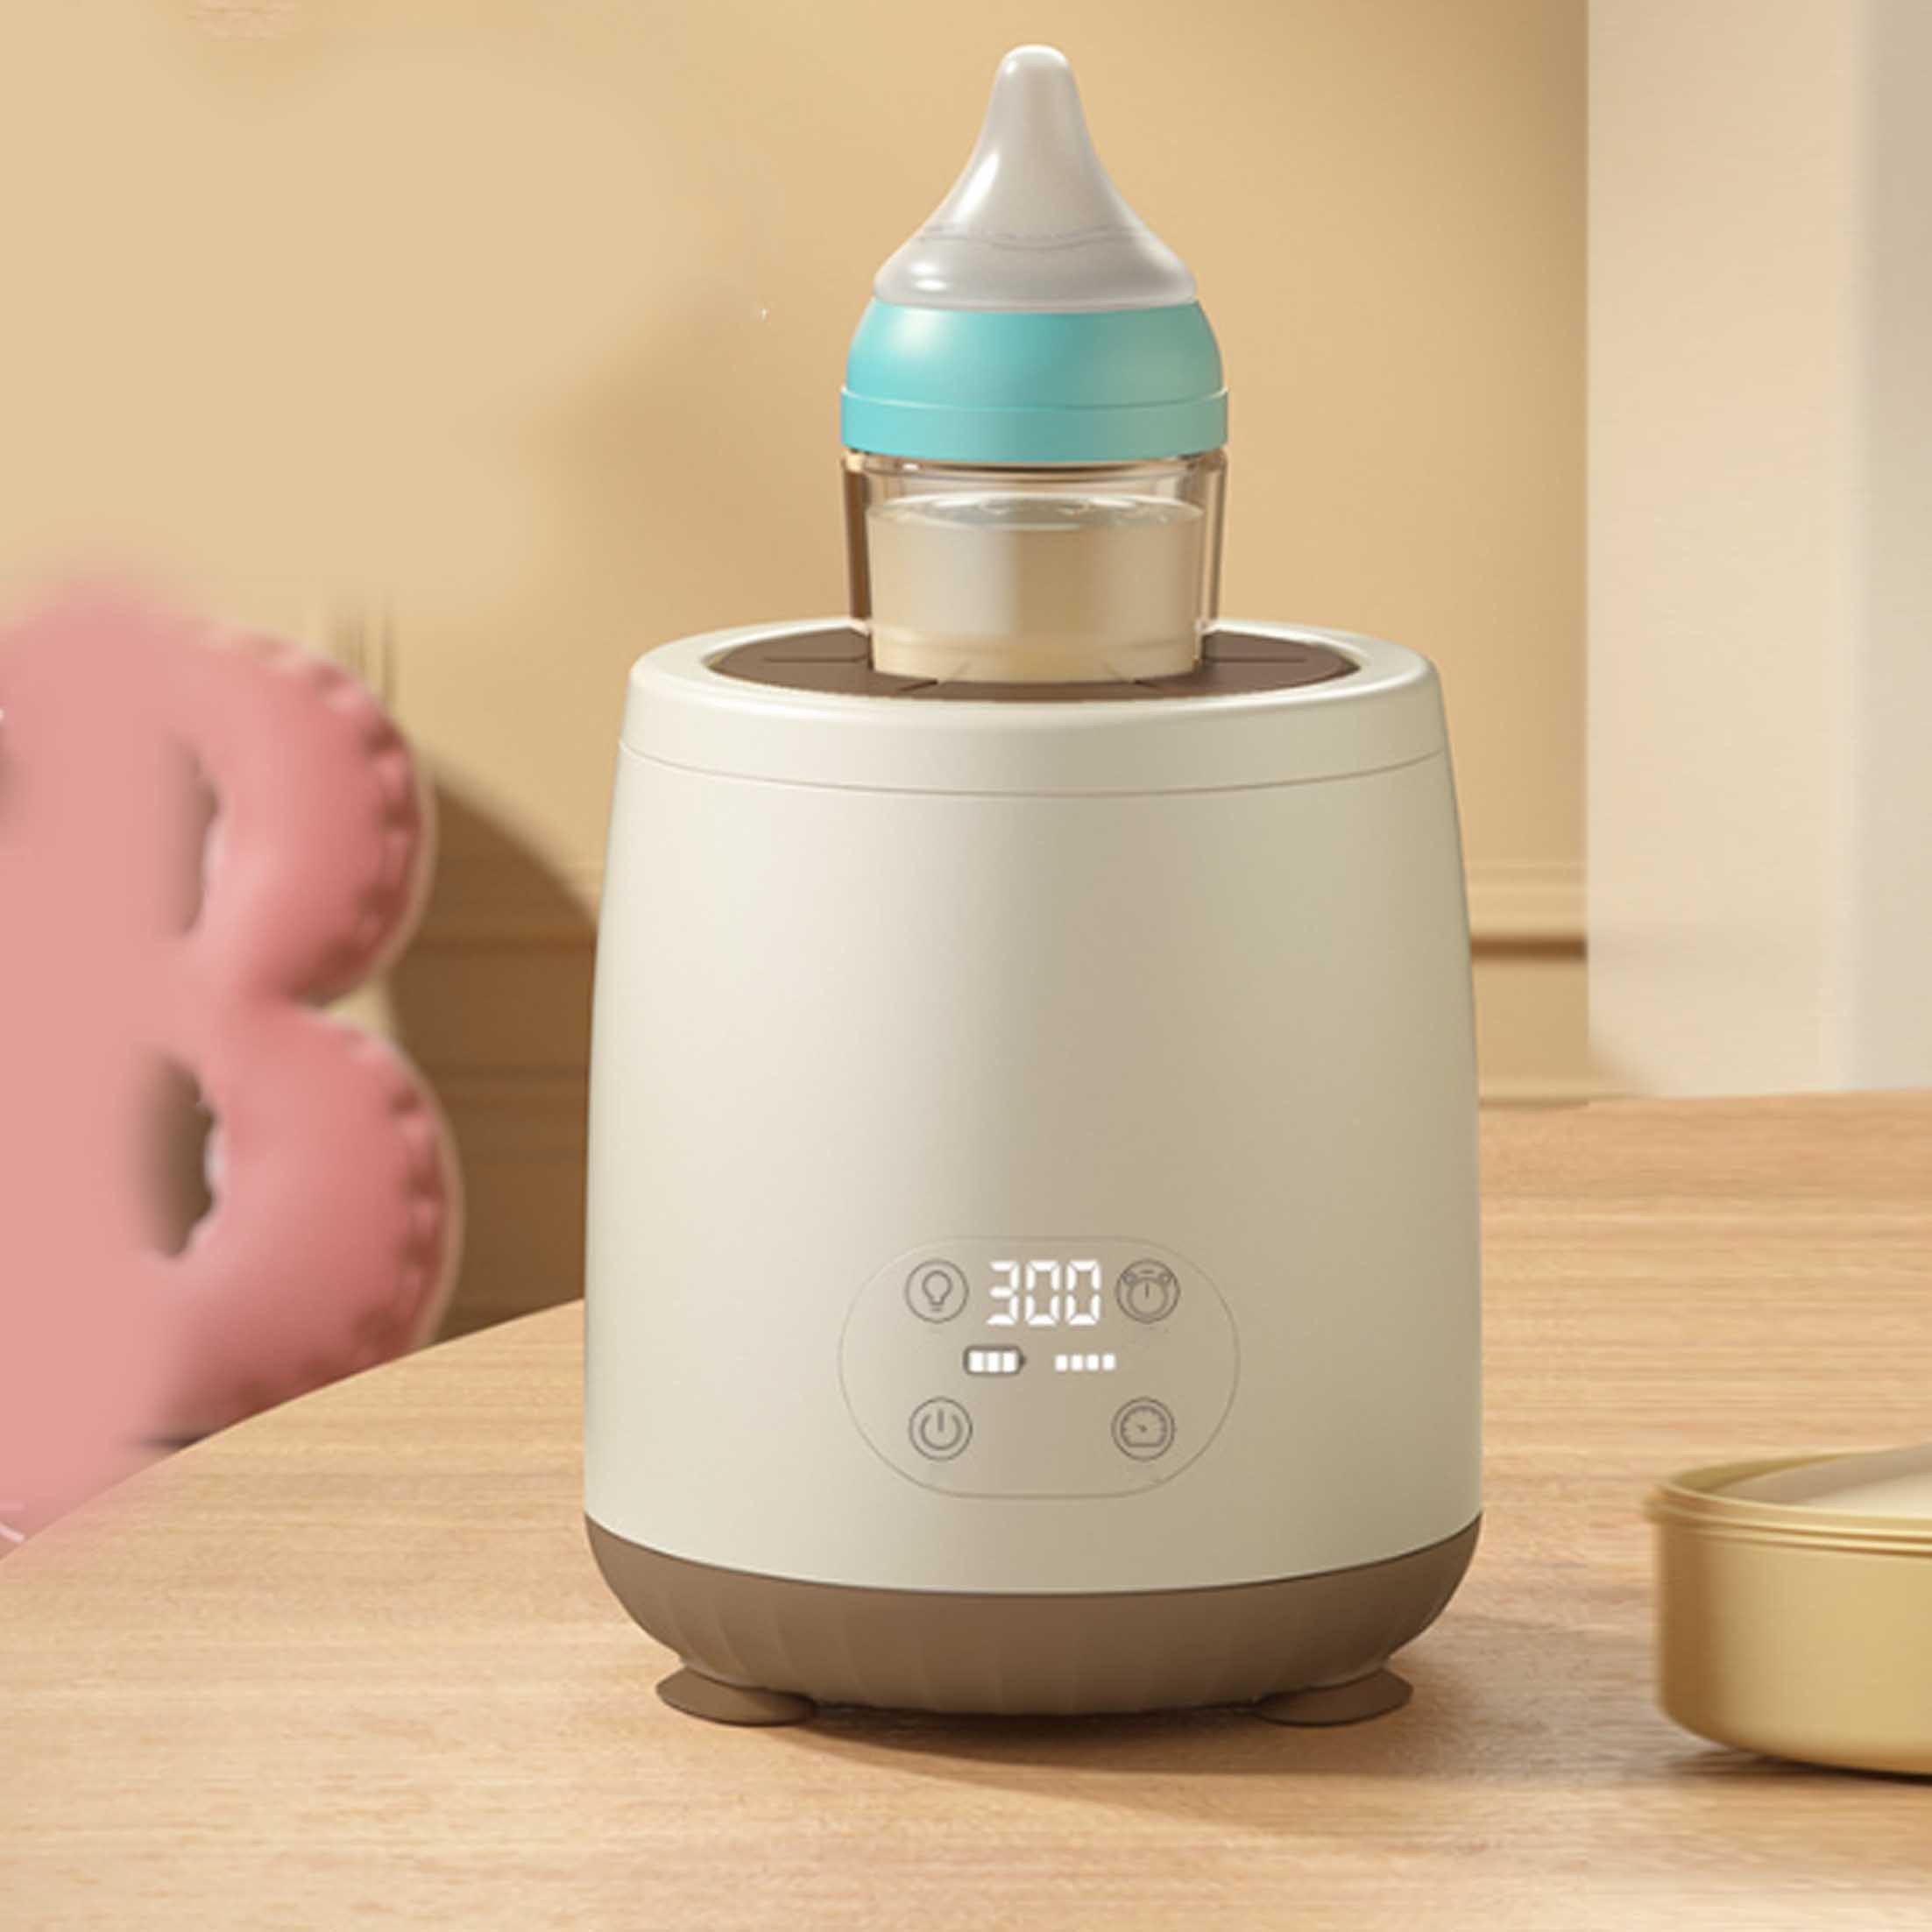 Baby Ja Babyflaschenwärmer Automatischer Milchshaker, Milchwärmer, Rührgerät, mit Nachtlicht, 360° bidirektionales Schütteln, 45°C konstante Temperatur, geräuscharm